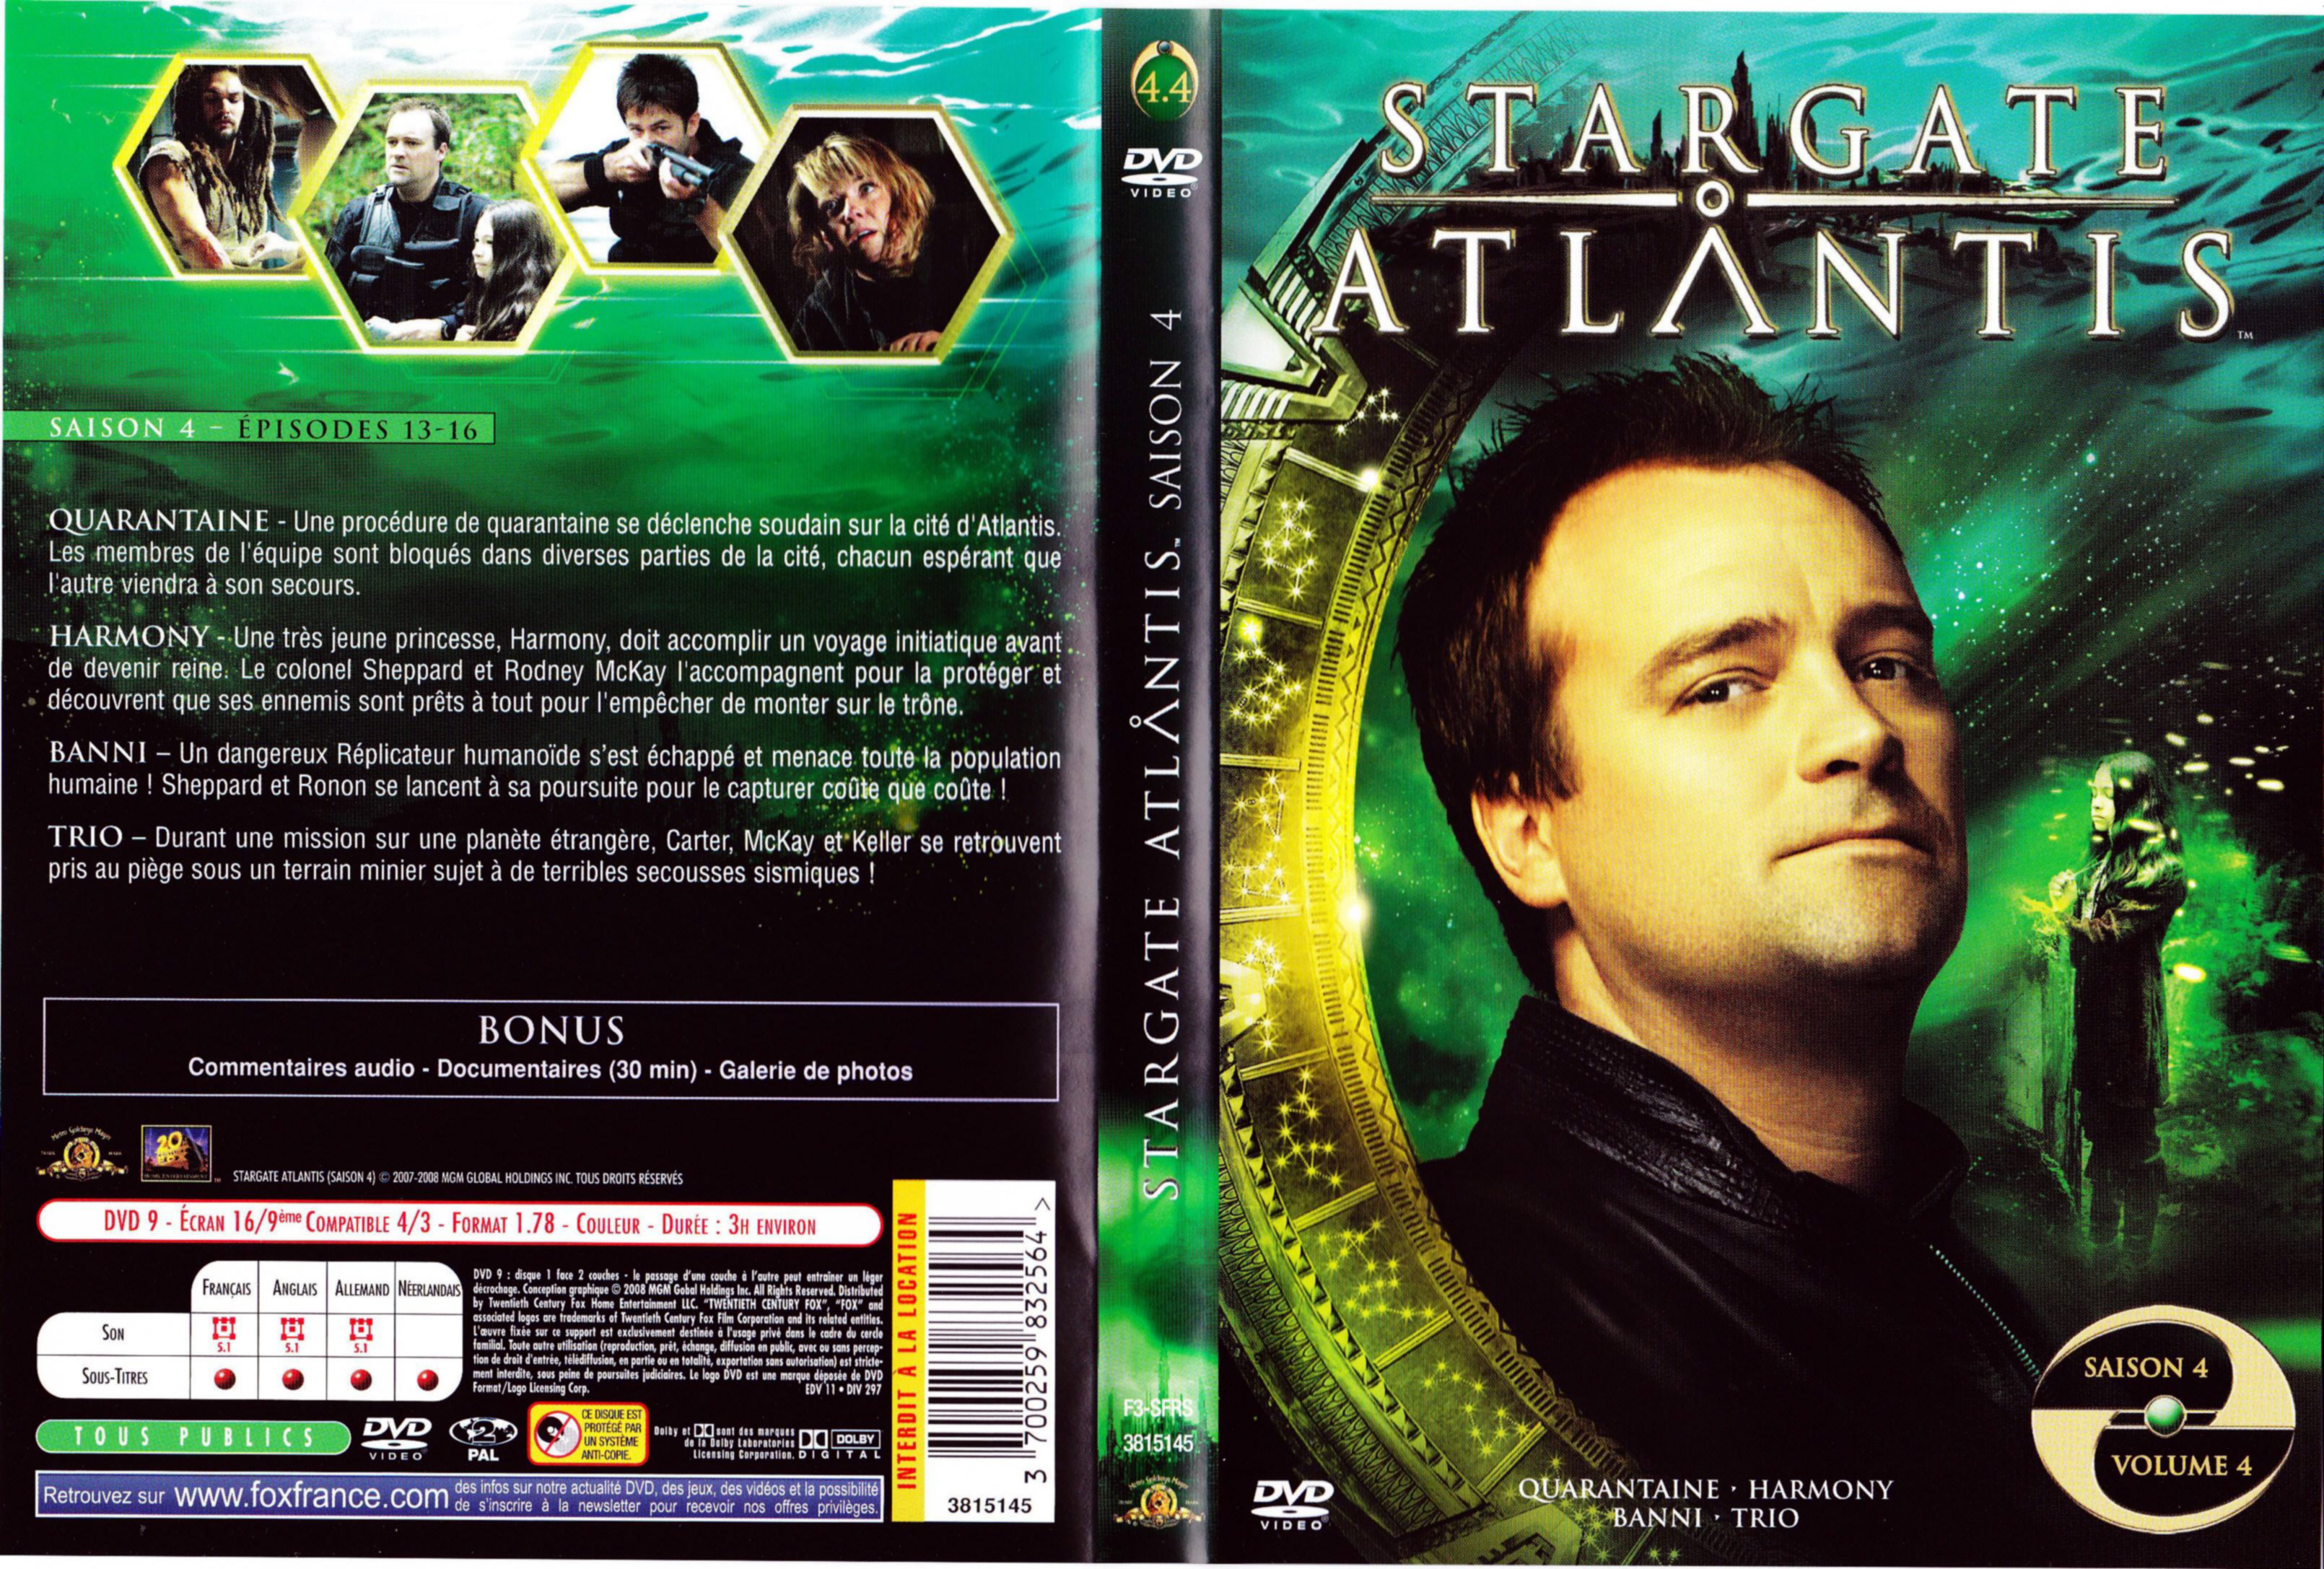 Jaquette DVD Stargate Atlantis Saison 4 vol 4